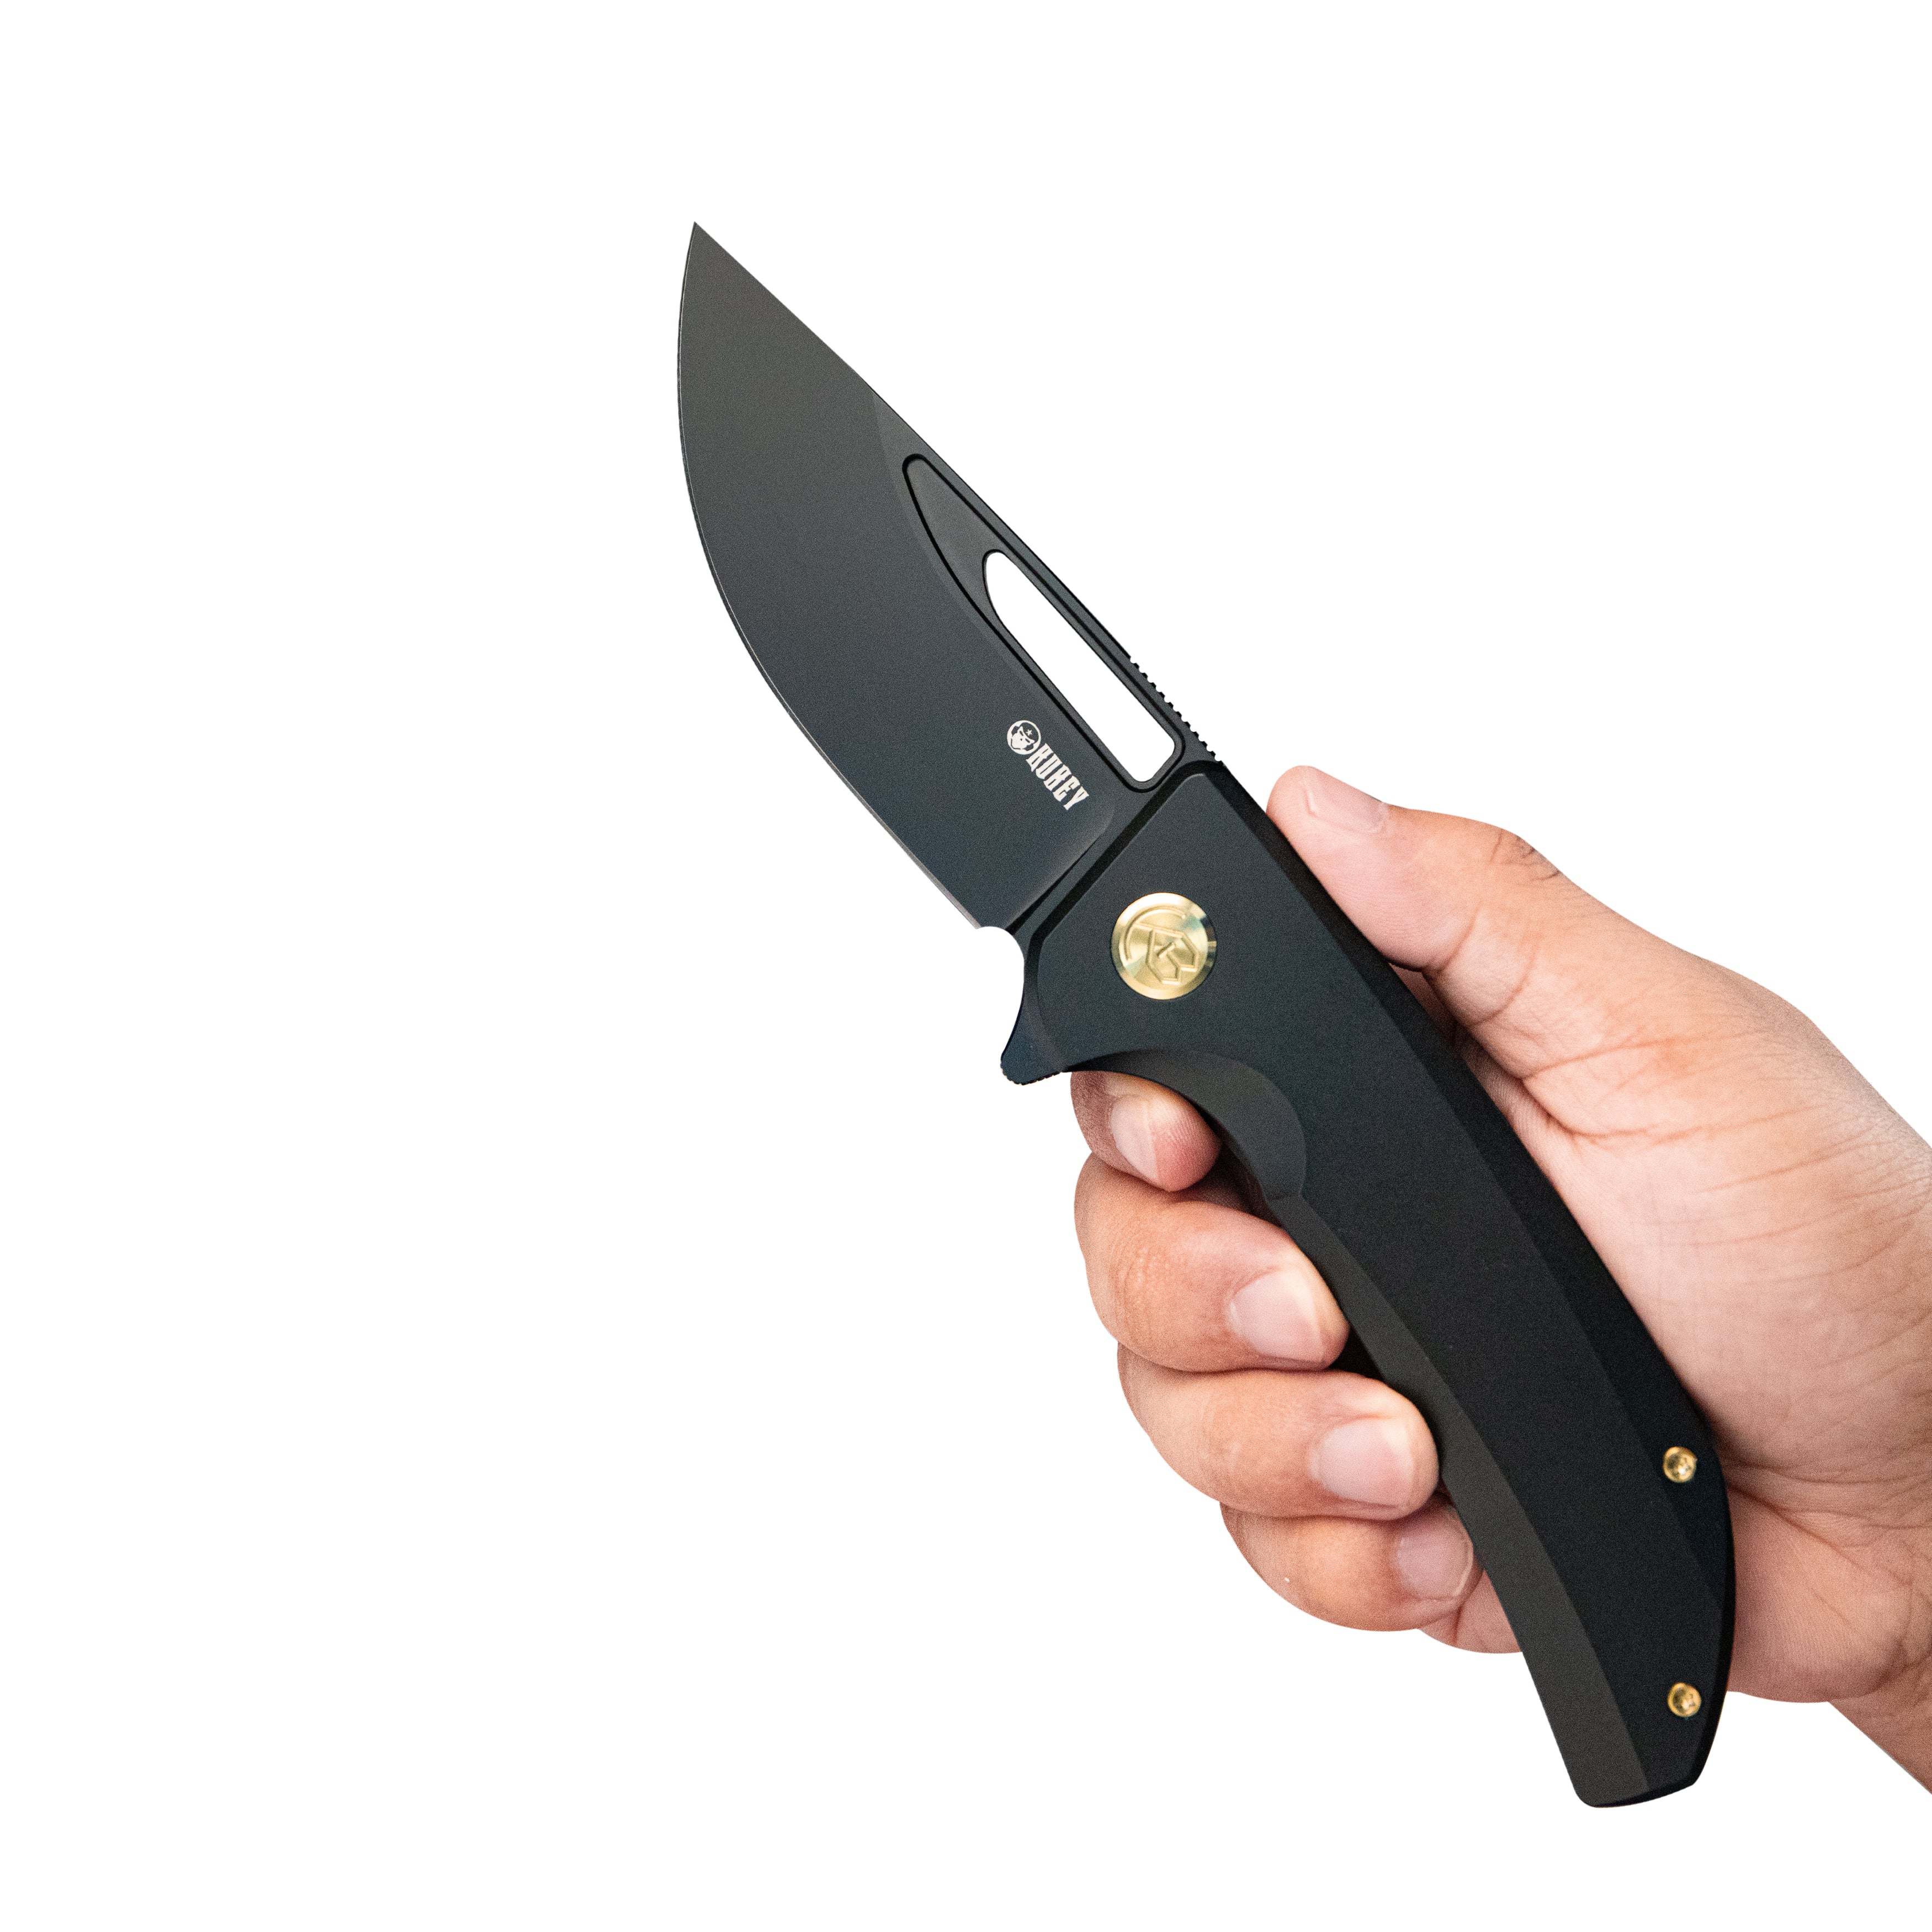 Kubey Hyperion Frame Lock Tactical Knife Black 6AL4V Titanium Handle 3.5" Black Coated CPM-S35VN KB368B